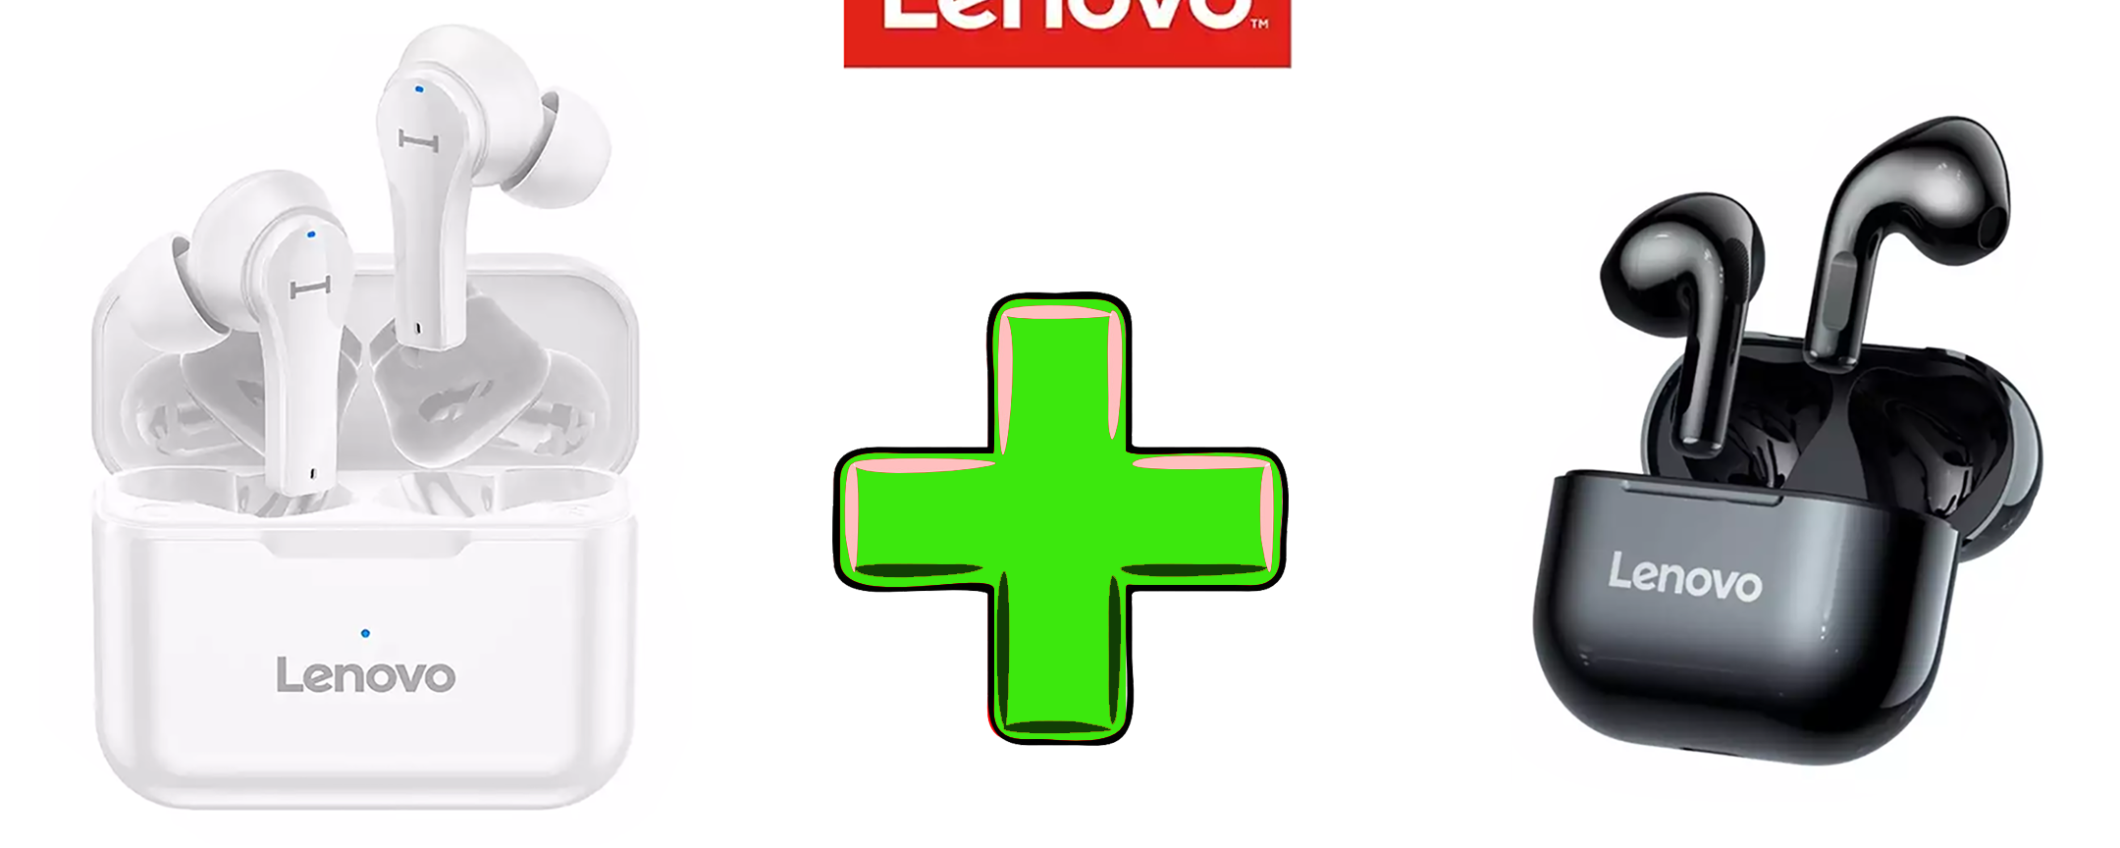 Due auricolari Lenovo in offerta: SCONTI fino al 68%